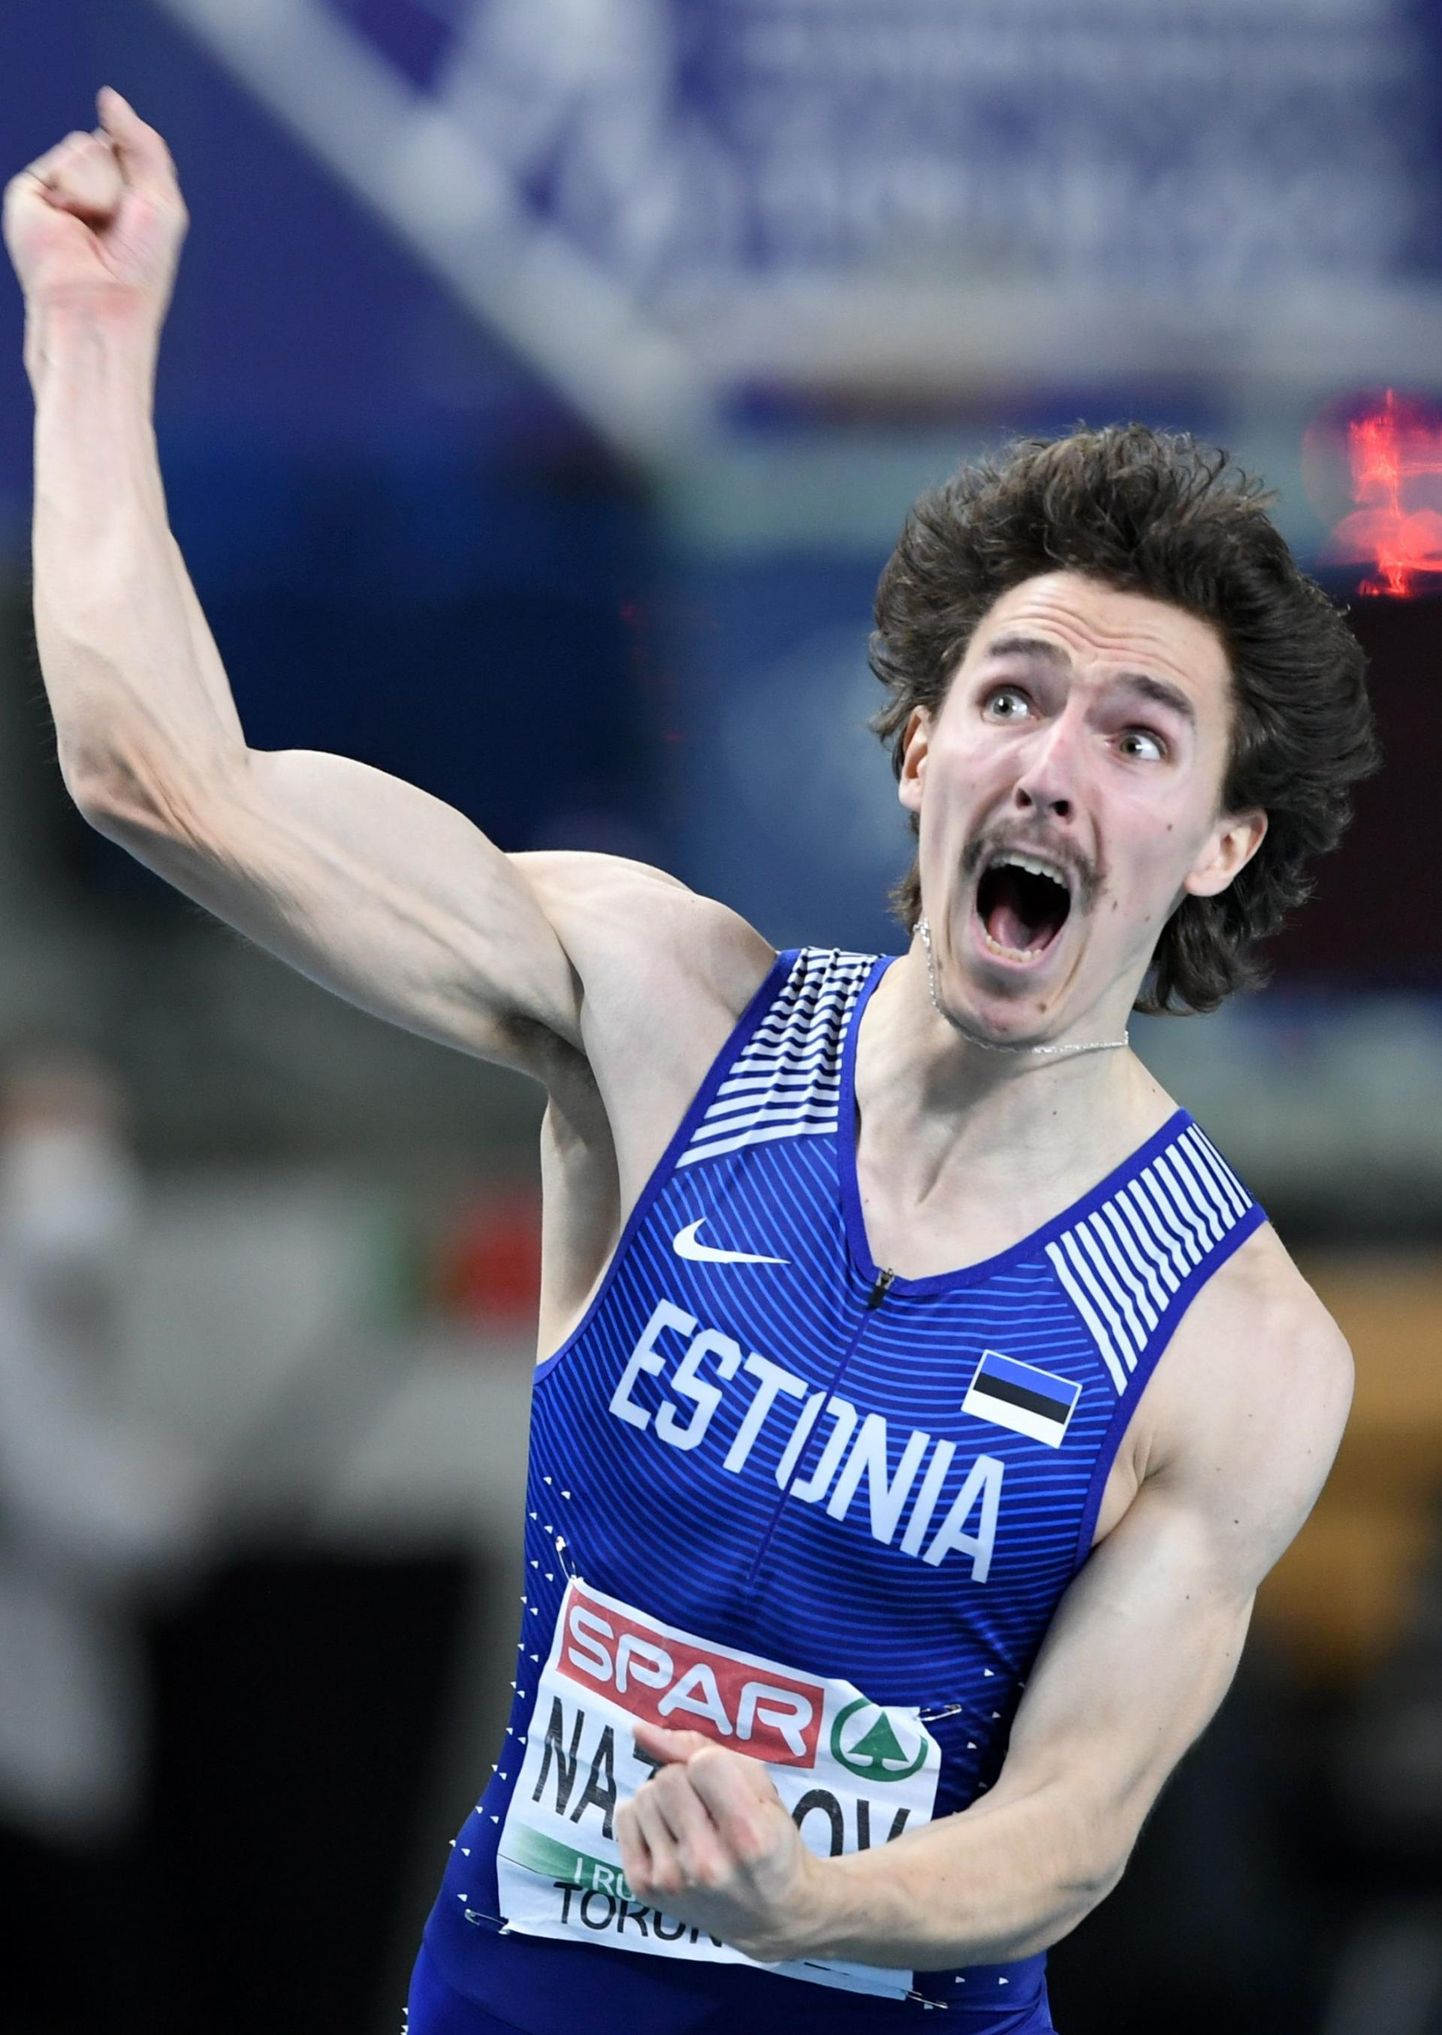 19. märtsil püstitas Karl Erik Nazarov sisemaailmameistrivõistlustel Belgradis 60 m jooksu eeljooksus Eesti siserekordi ajaga 6,55.